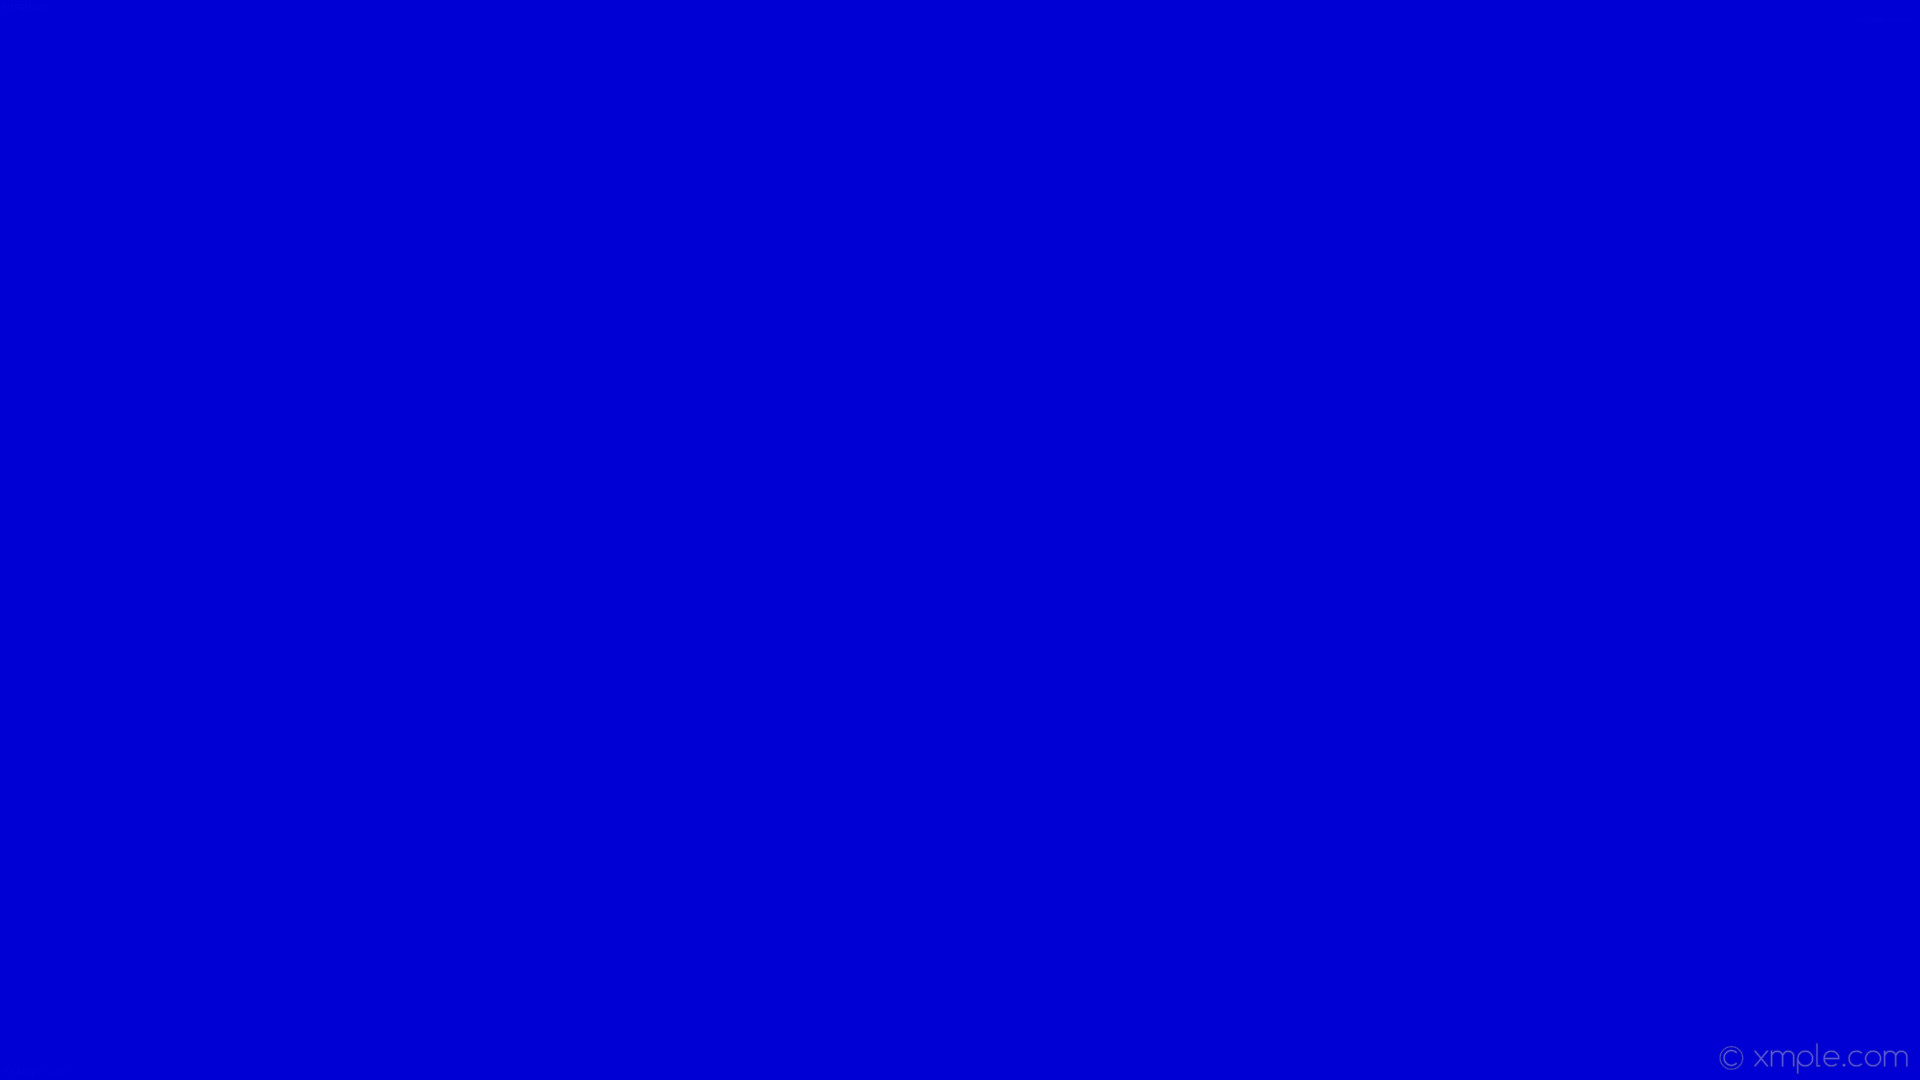 1920x1080 wallpaper solid color blue one colour plain single #0000d4